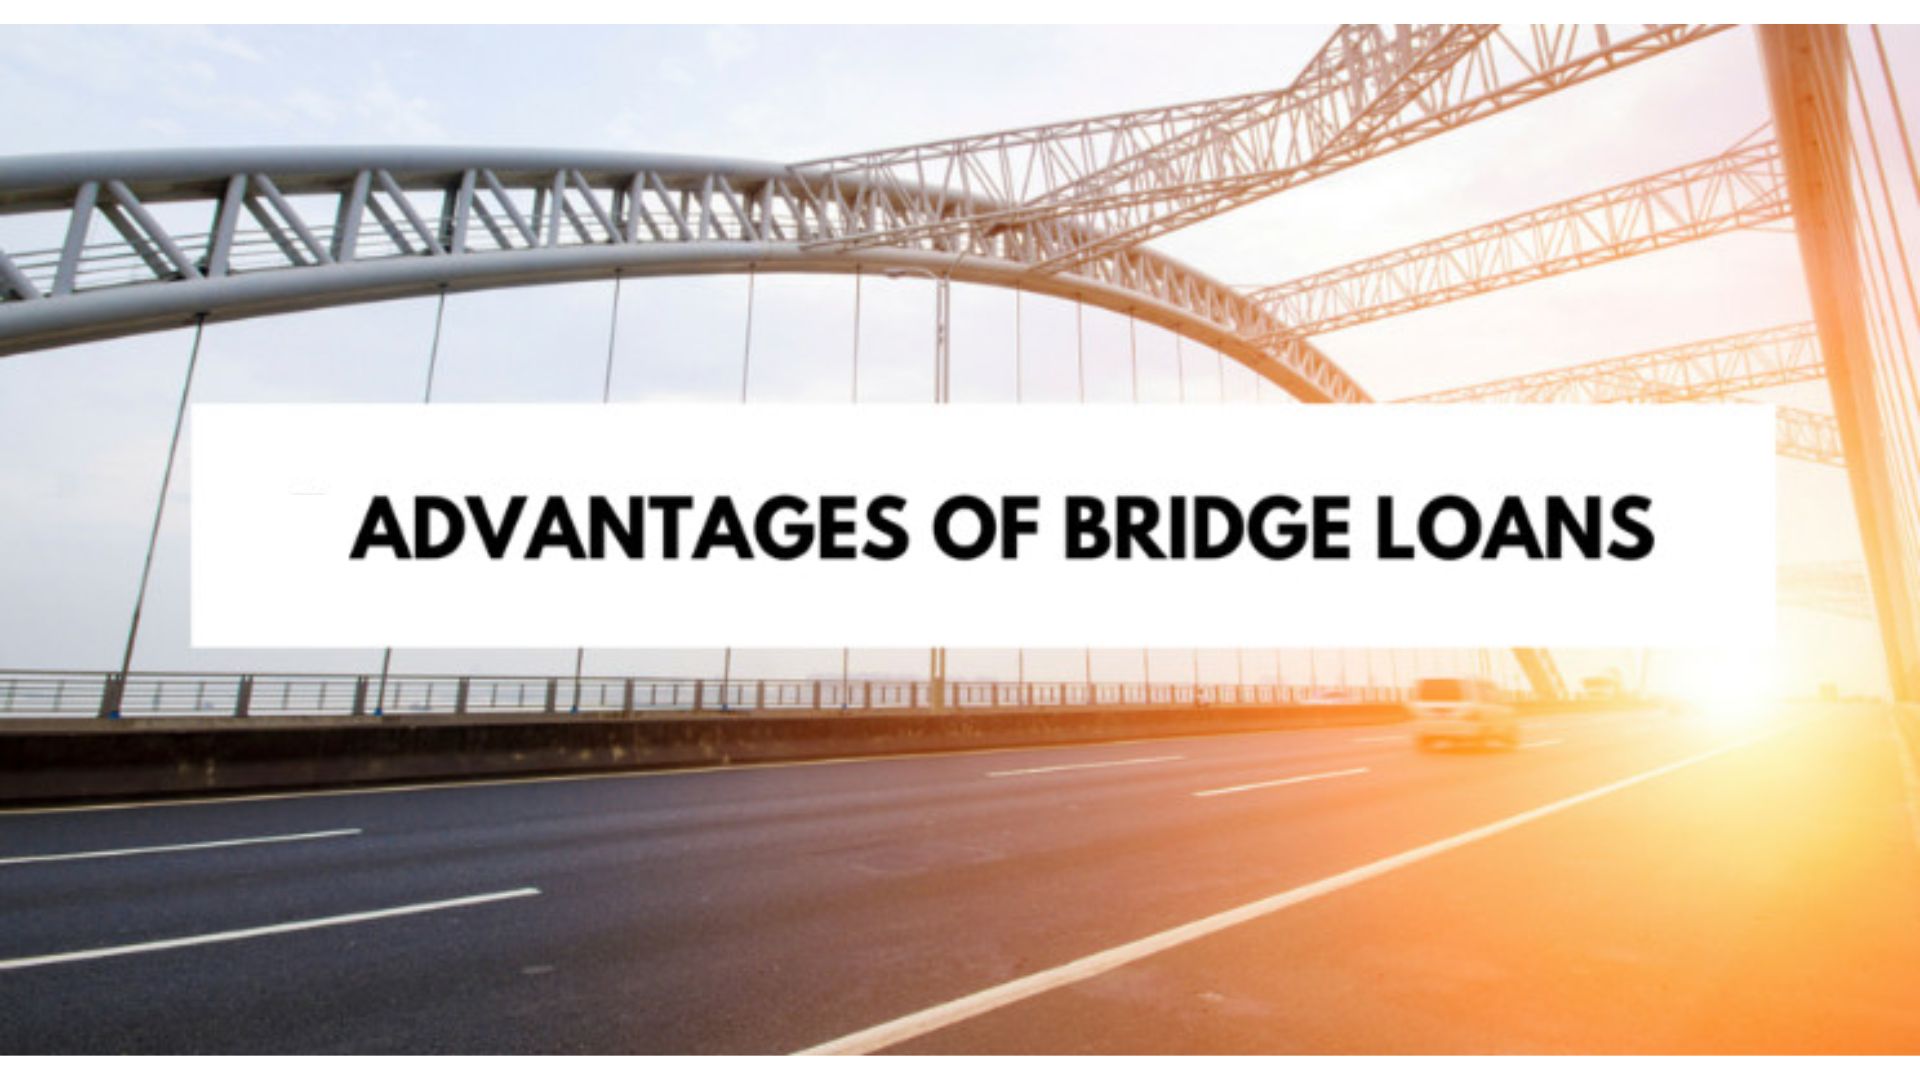 Advantages of Bridge Loans